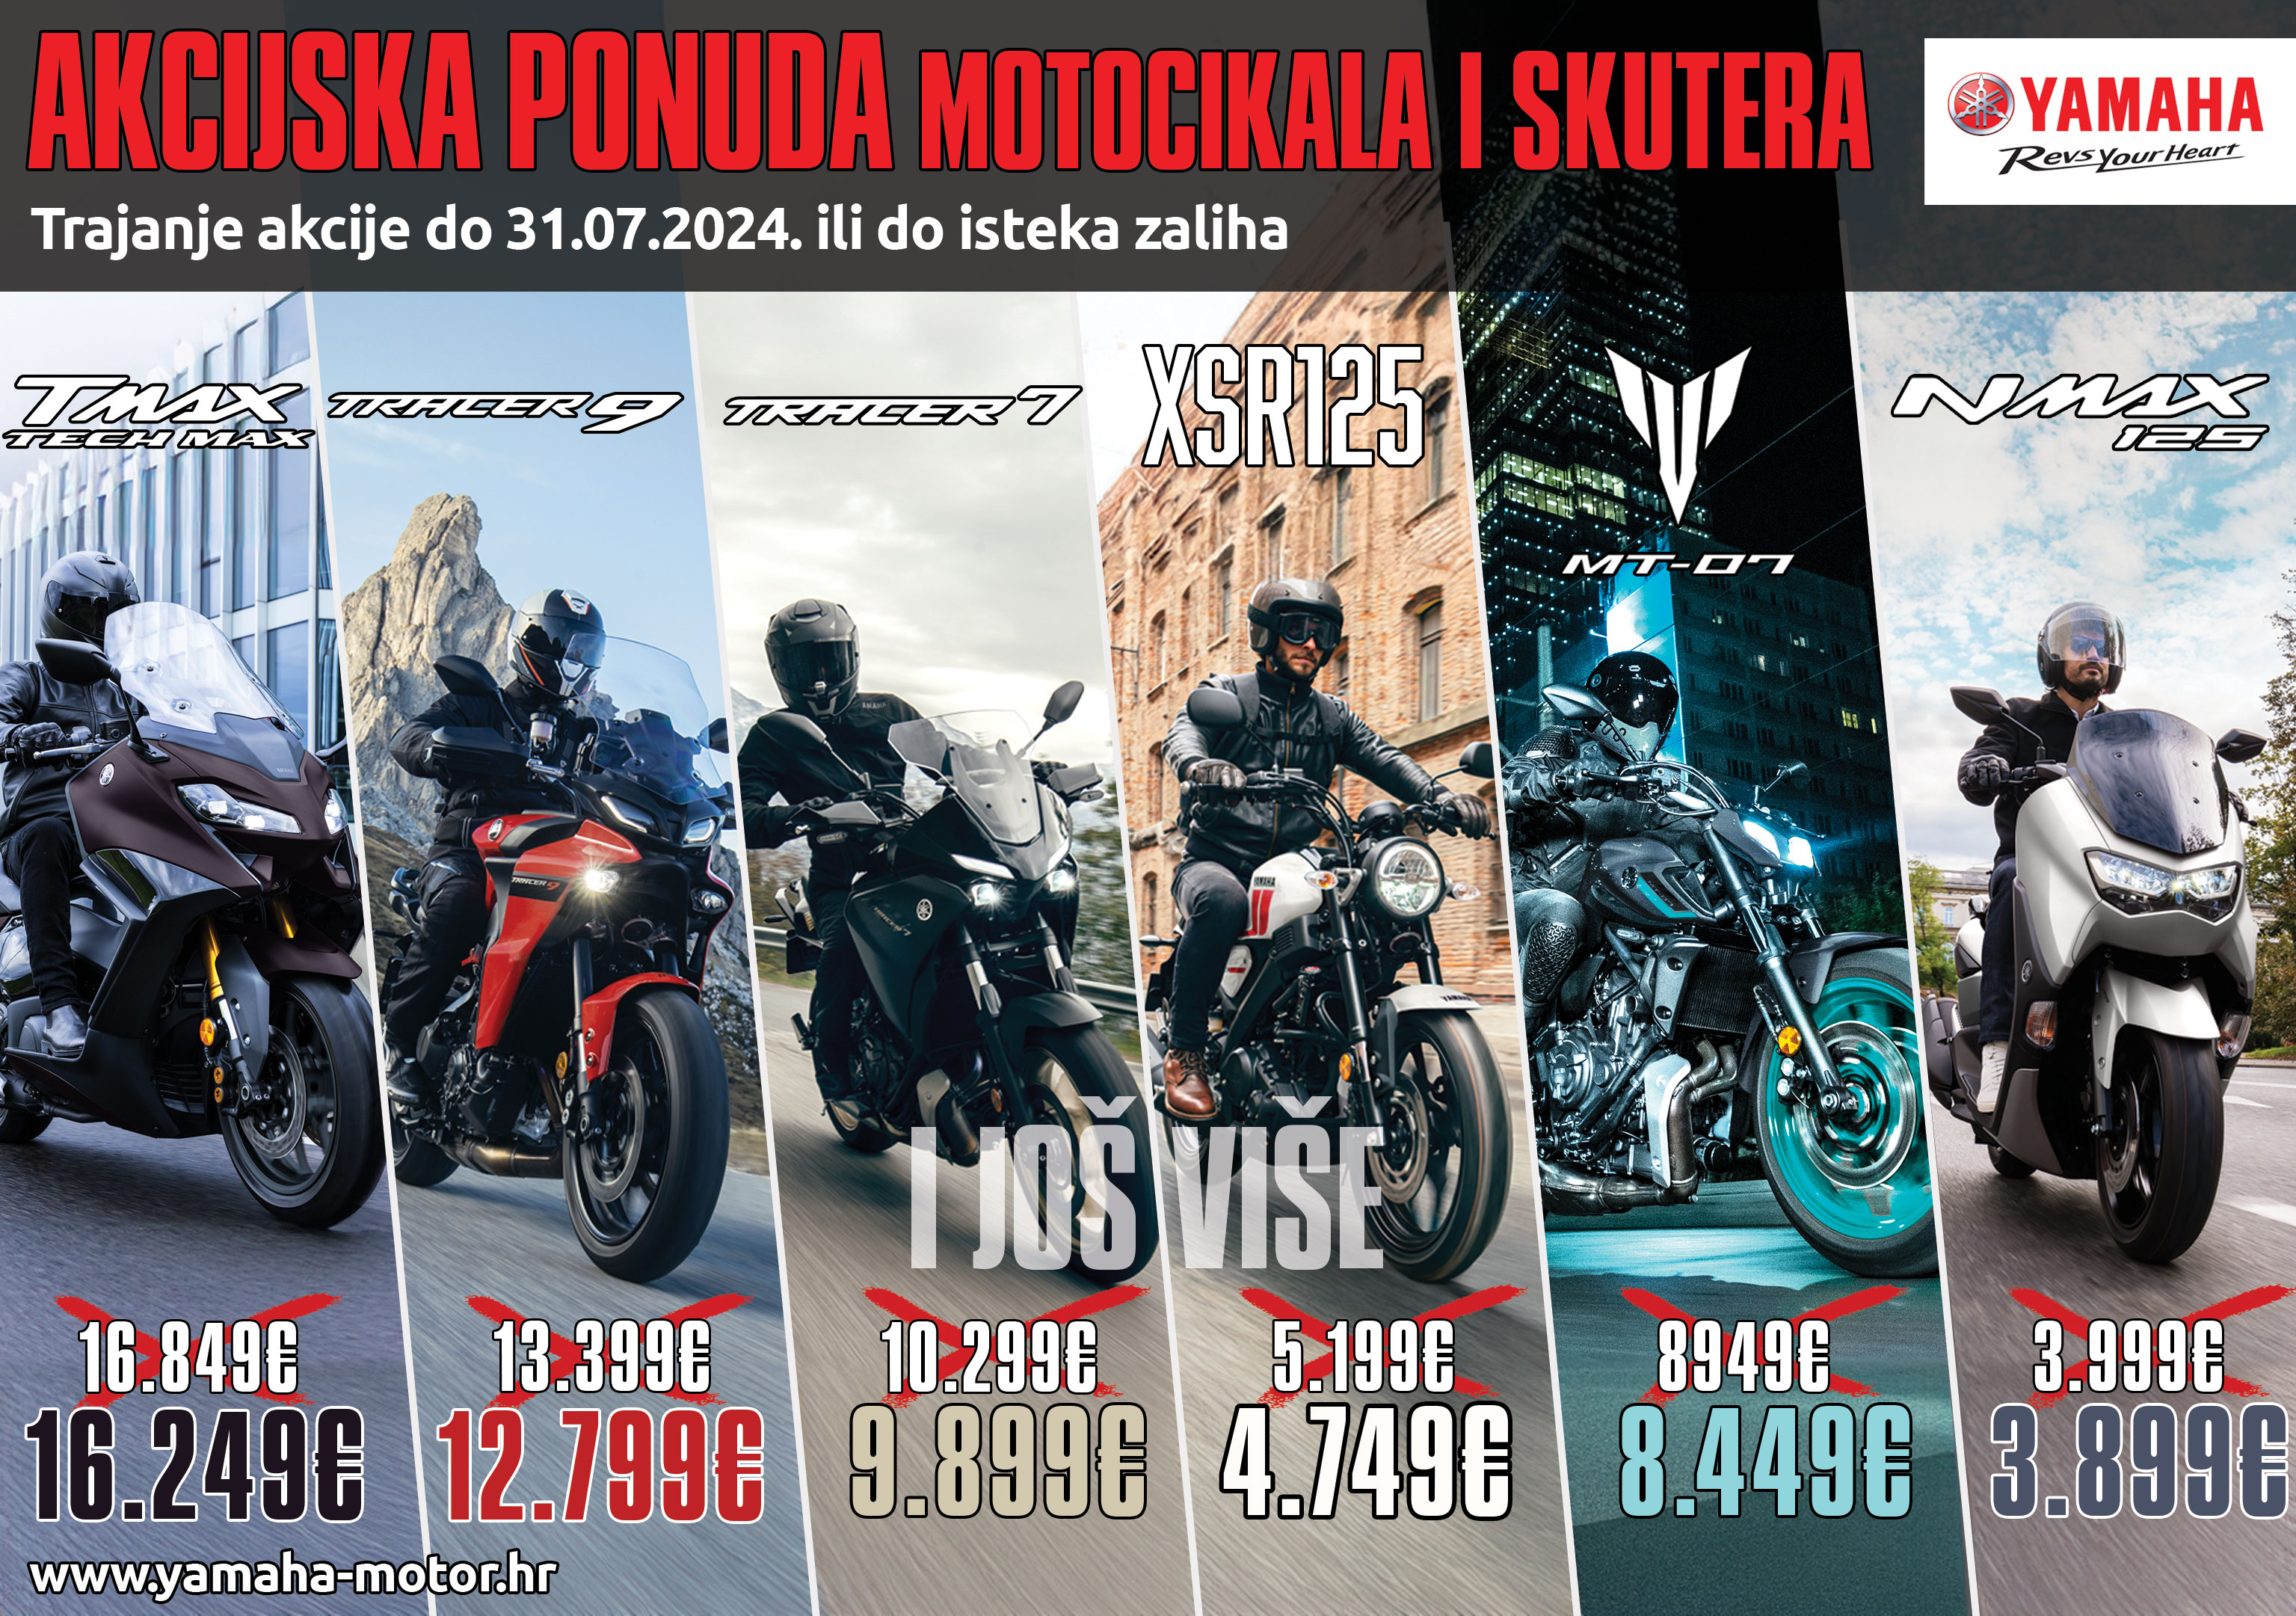 Moto plus Ikica - Yamaha akcija 2024